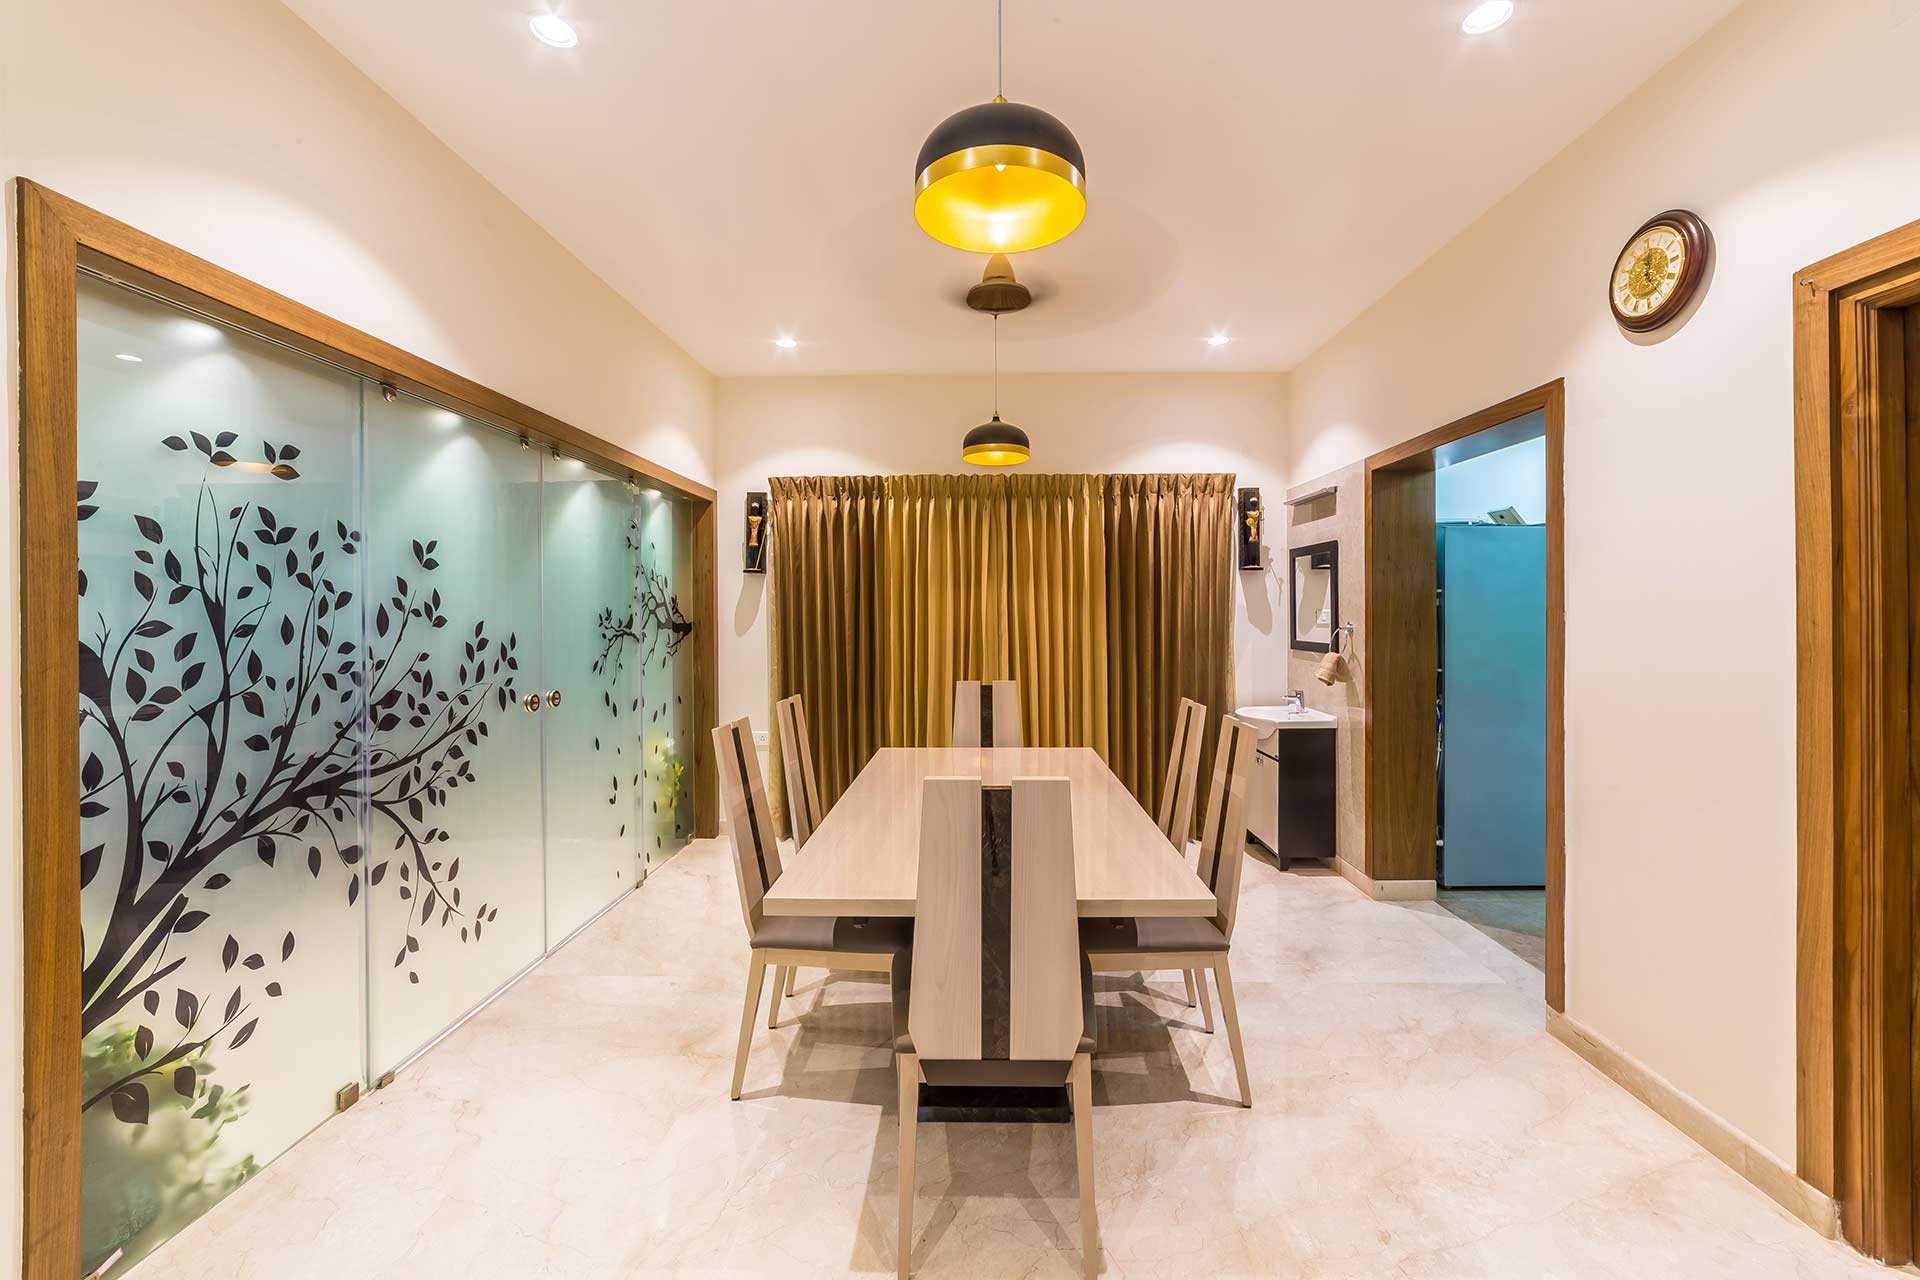 Villa Interior Design in Coimbatore, Leading Interior Designers in Coimbatore